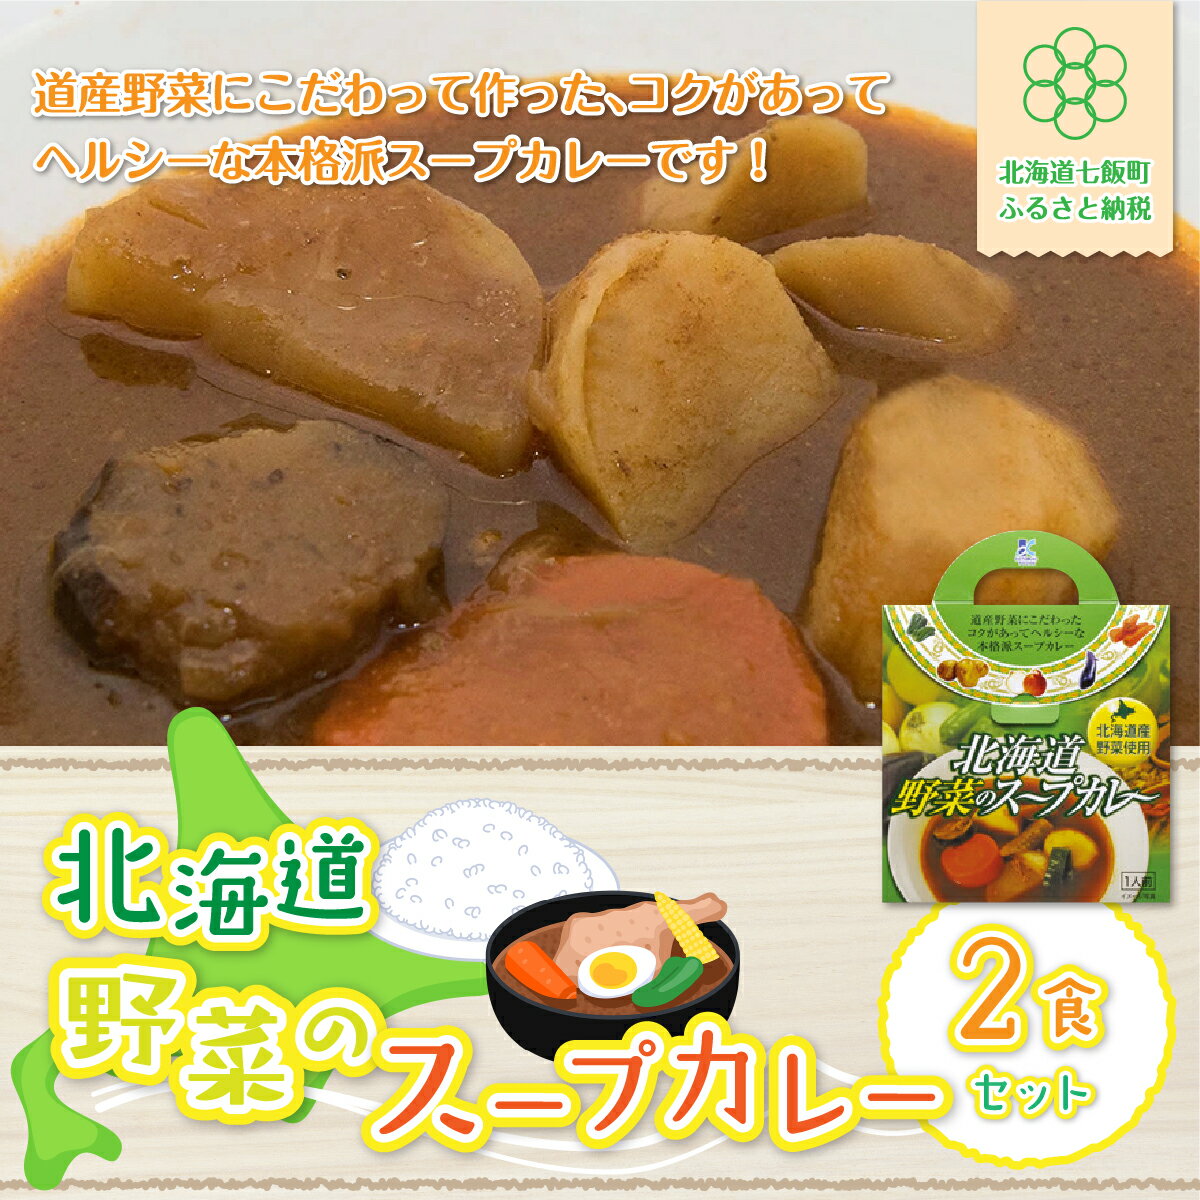 [北海道野菜のスープカレー]2食セット 北海道産野菜使用 スープカレー 野菜 ベジタリアン カレーライス 北海道産